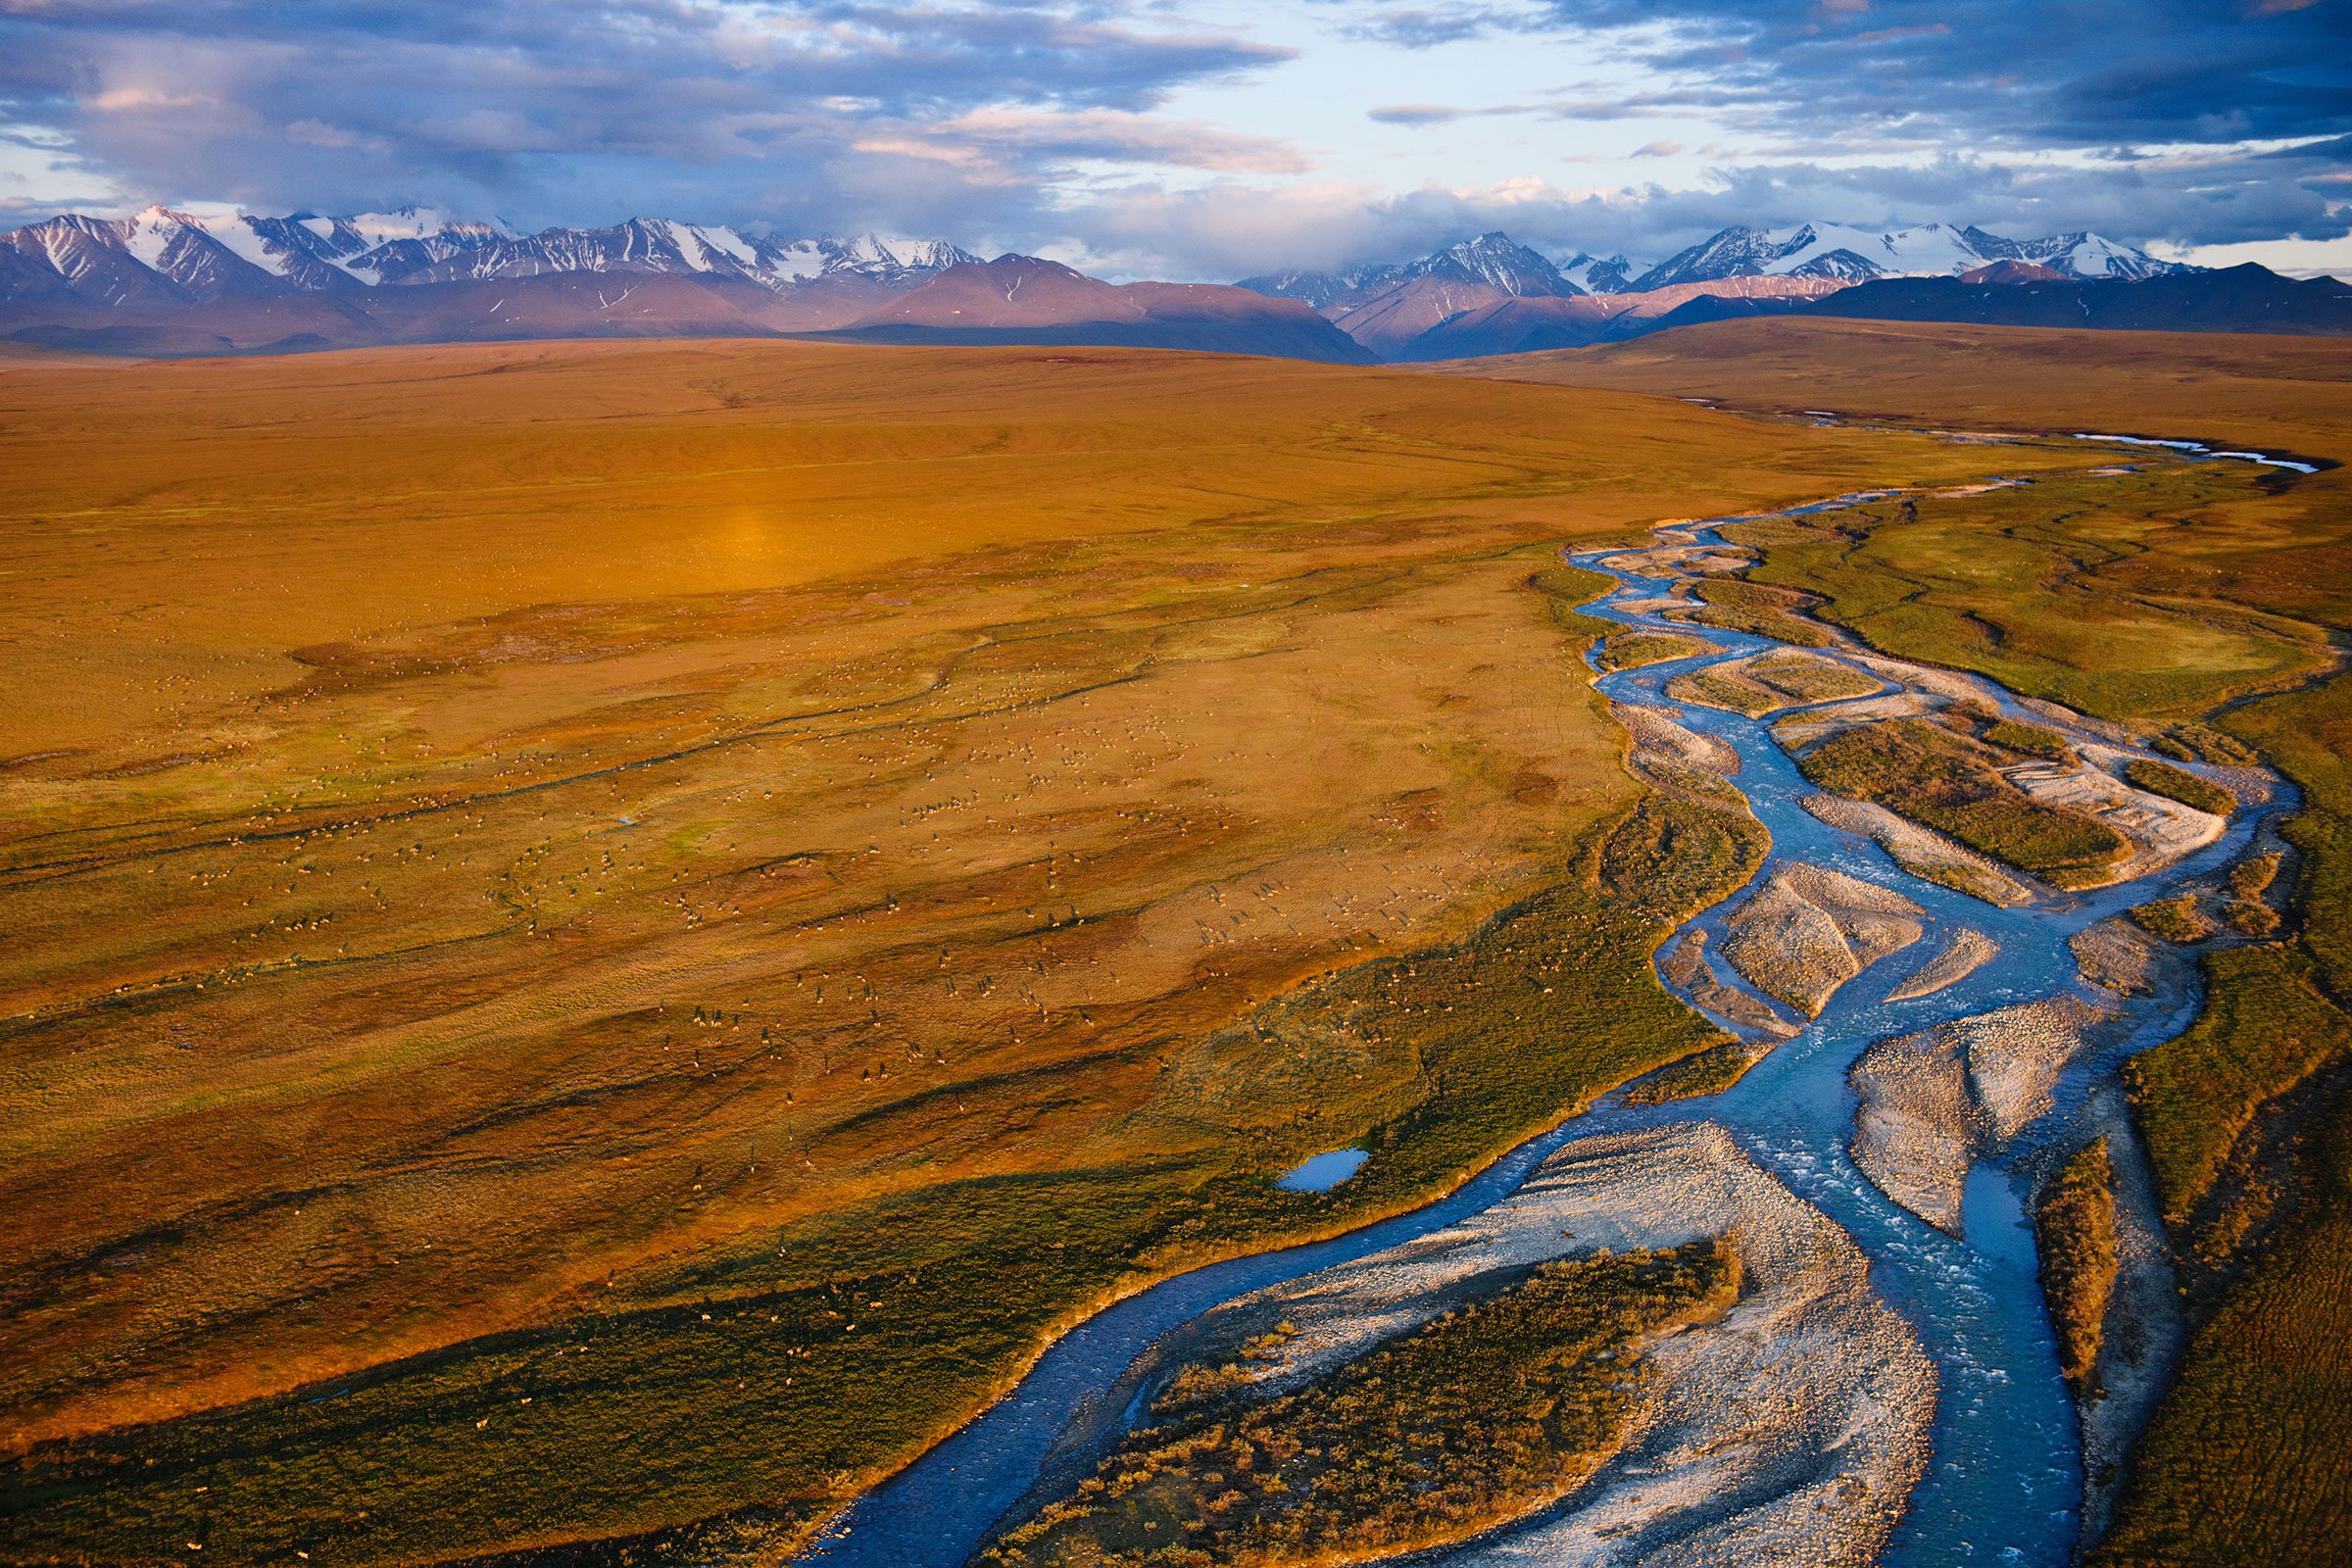 A river stretches through plains in an aerial shot